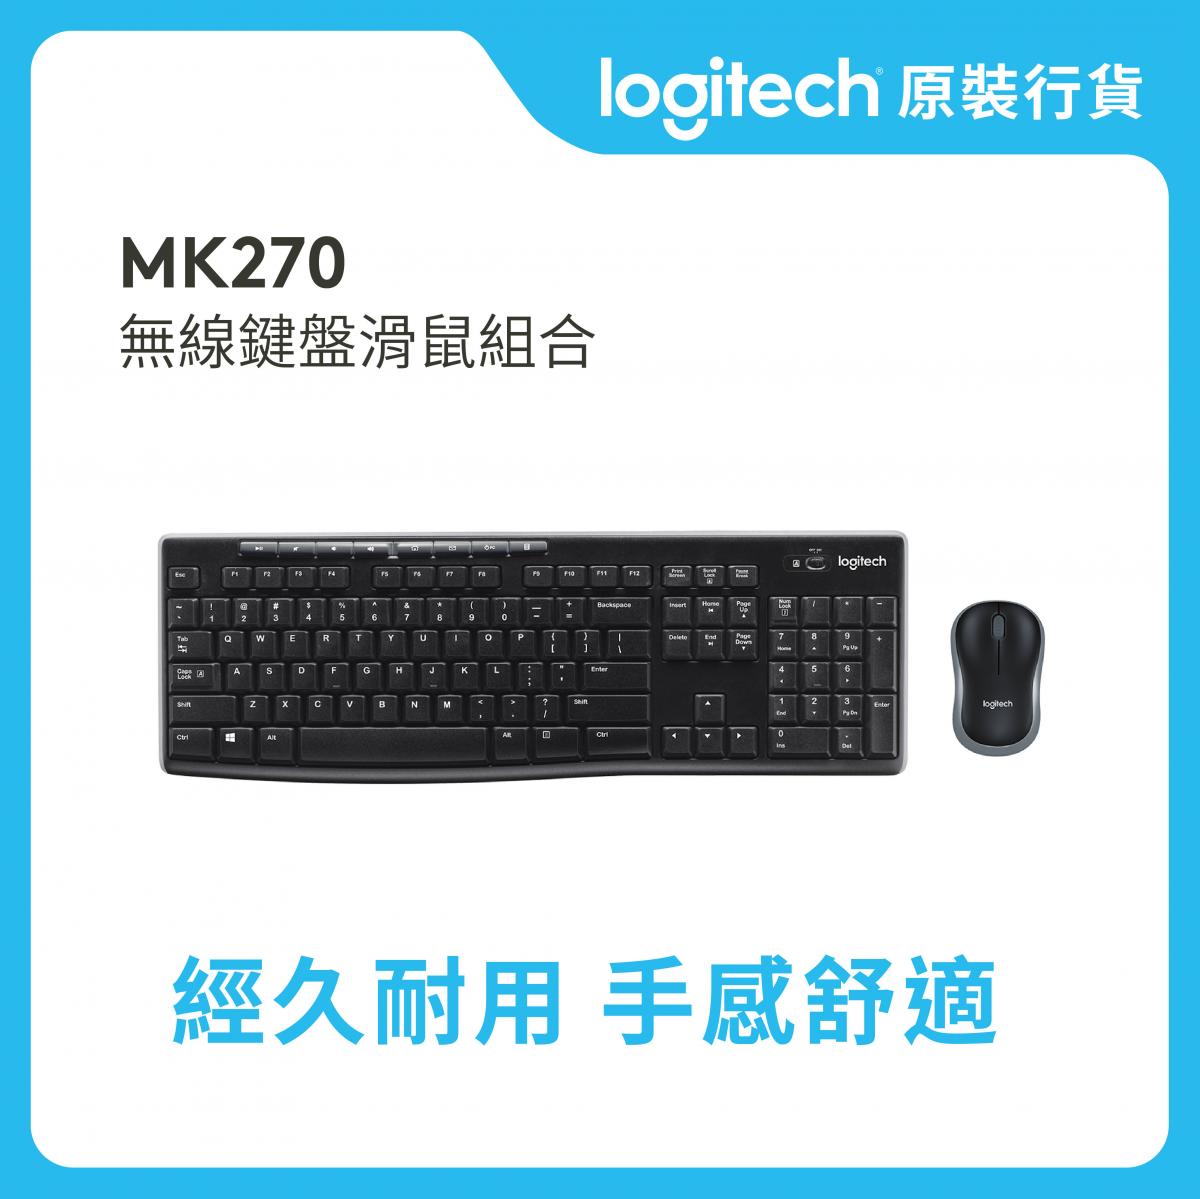 MK270R - 英文 - 可靠無線鍵盤與滑鼠組合 (920-006314)